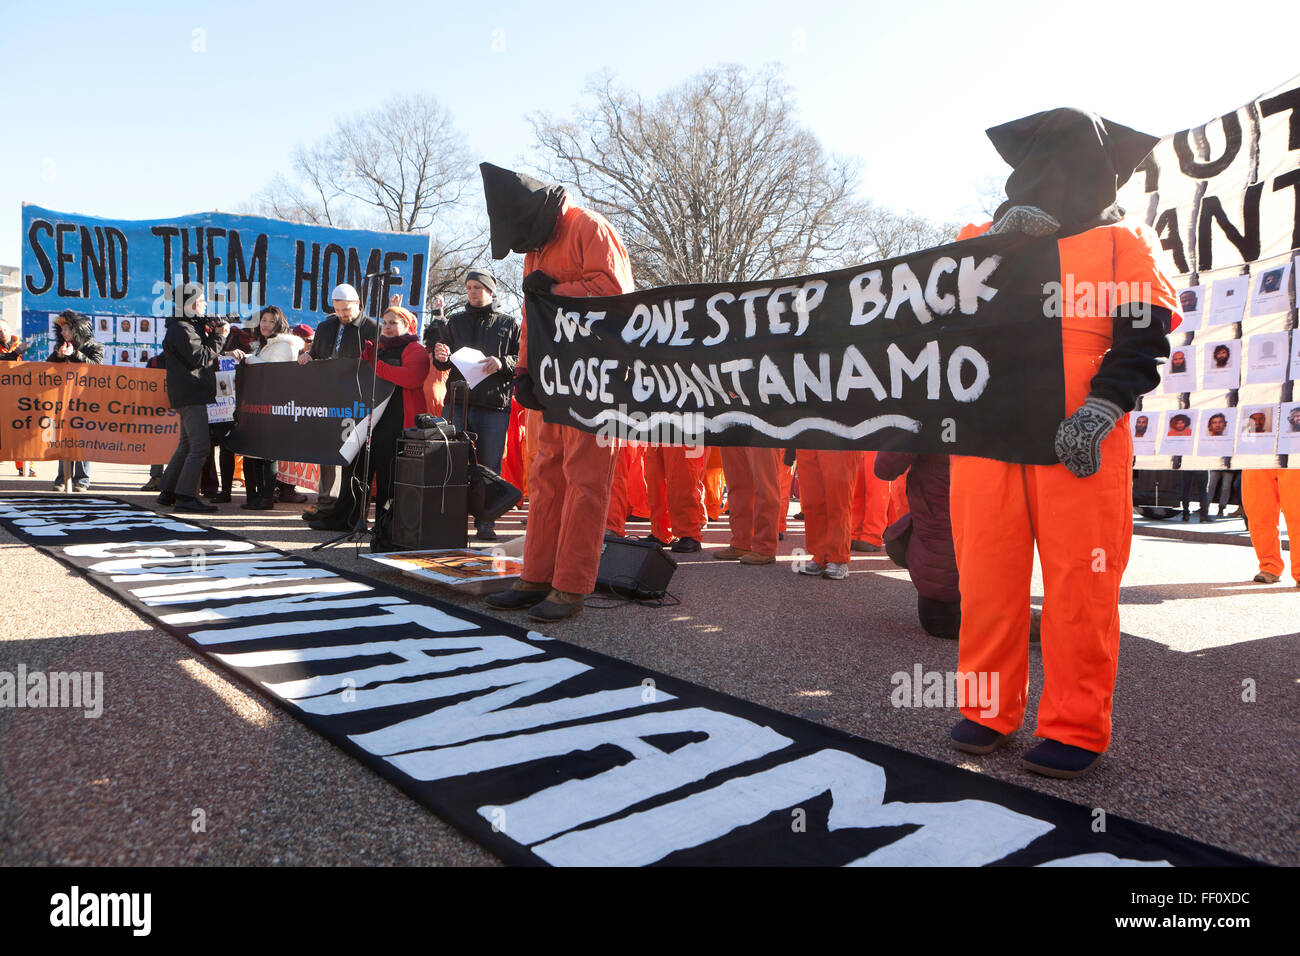 11 gennaio 2016 - Washington DC, Stati Uniti d'America: attivisti per i diritti umani protestare davanti alla Casa Bianca per la chiusura di Guantanamo Foto Stock